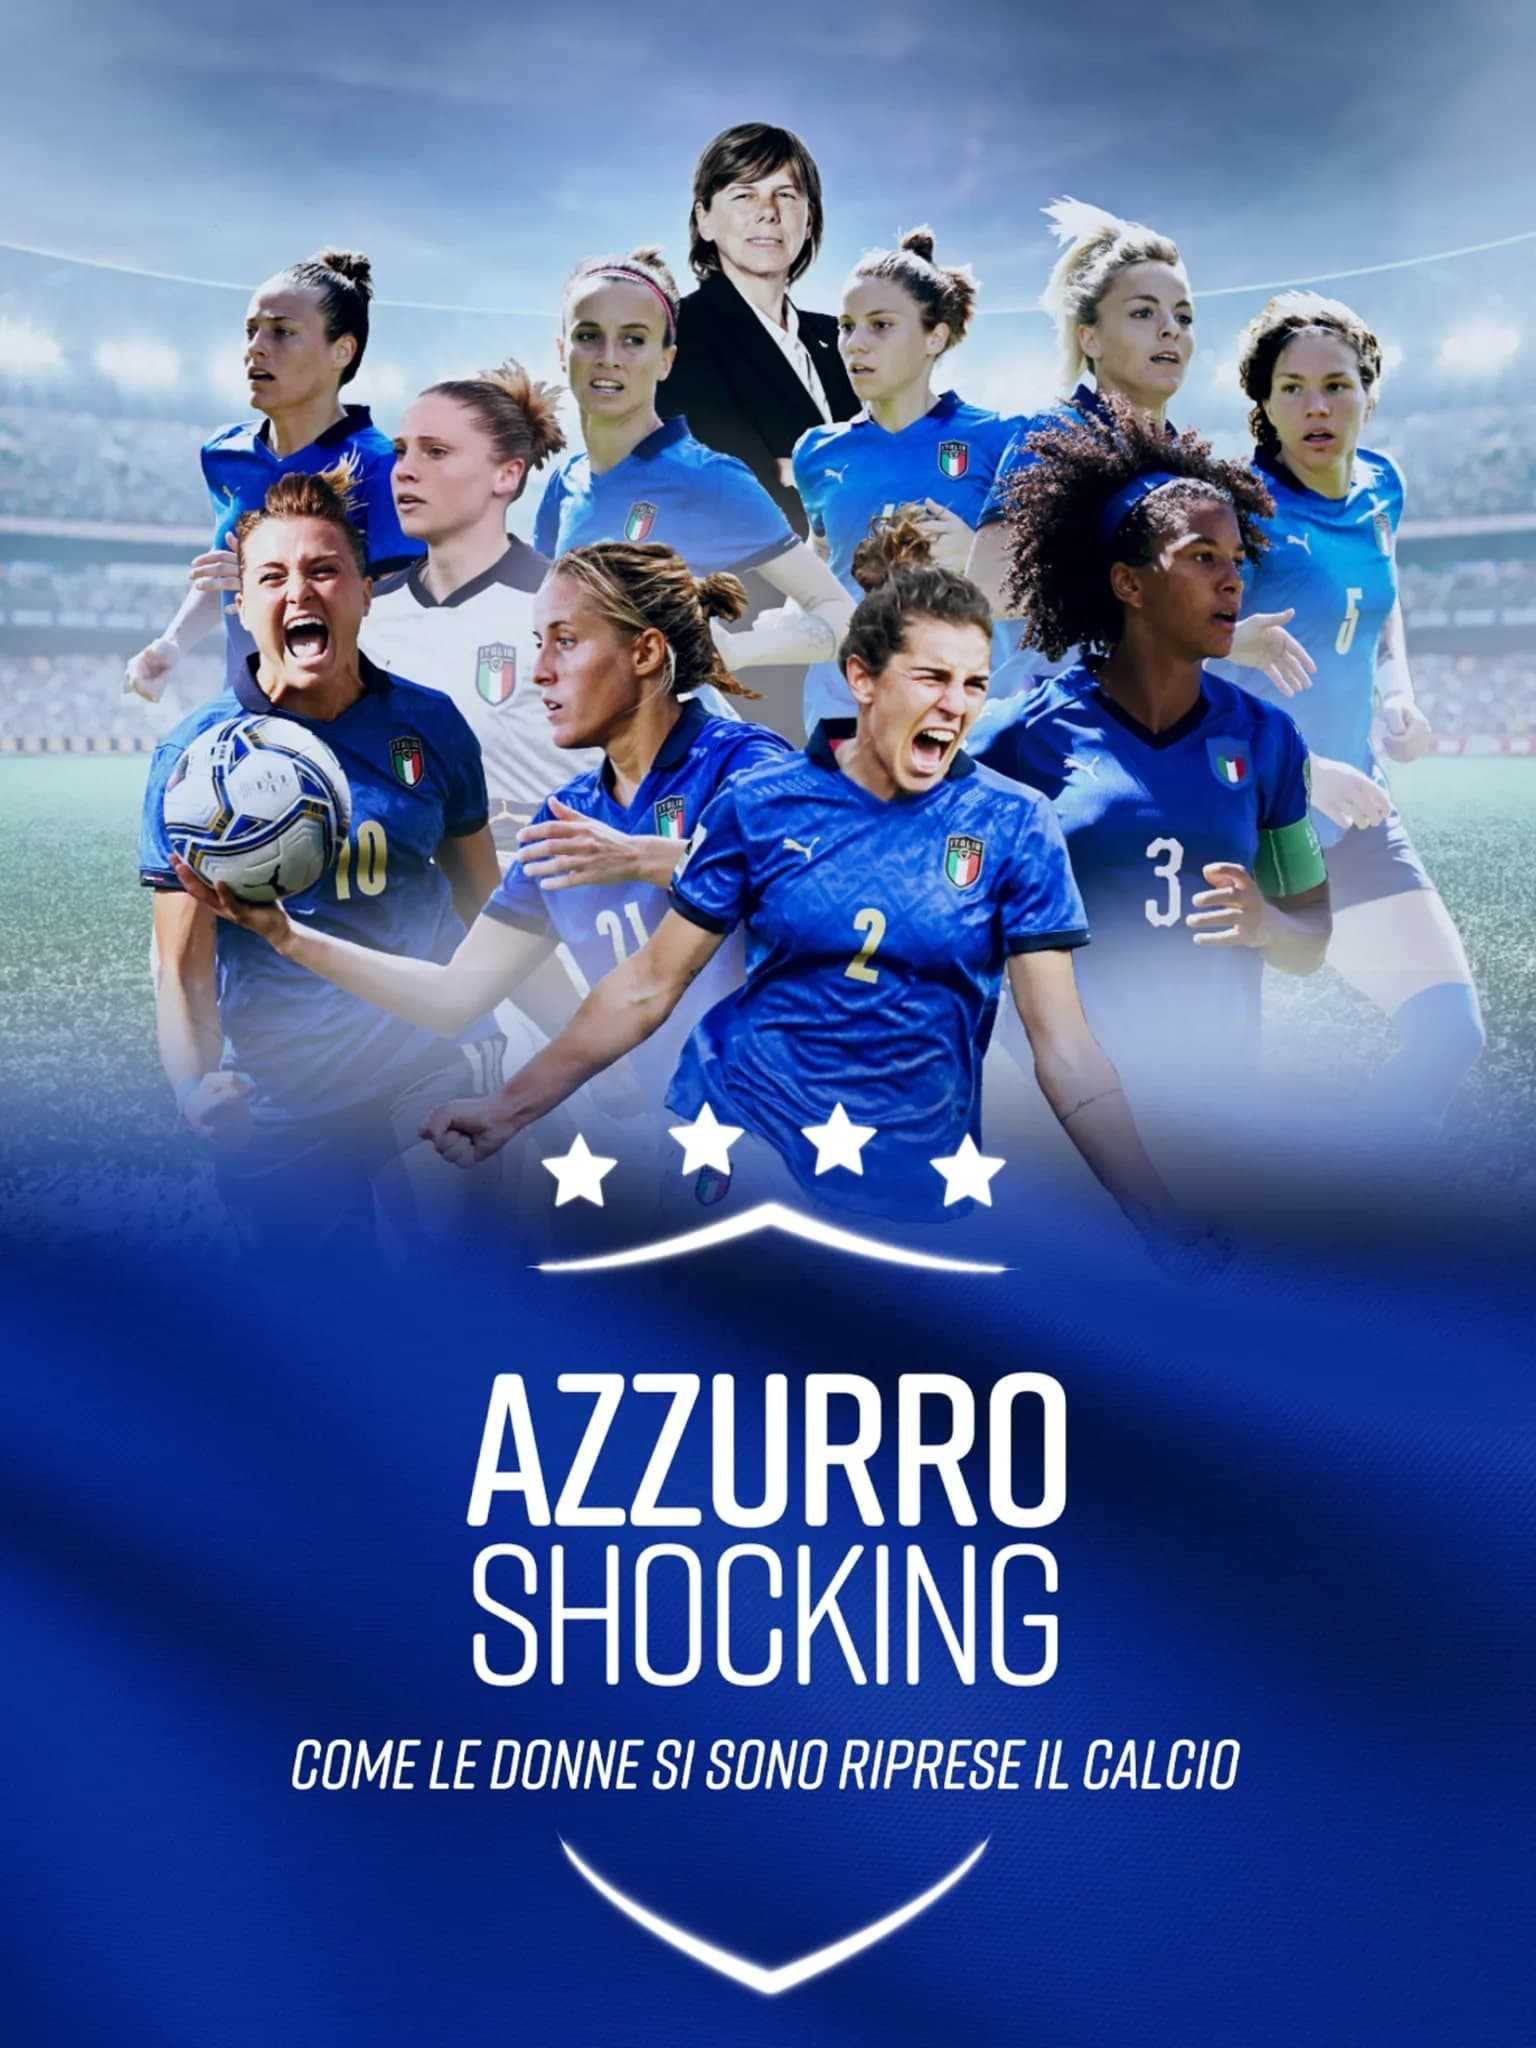 Azzurro Shocking - Come le donne si sono prese il calcio [CORTO] in streaming